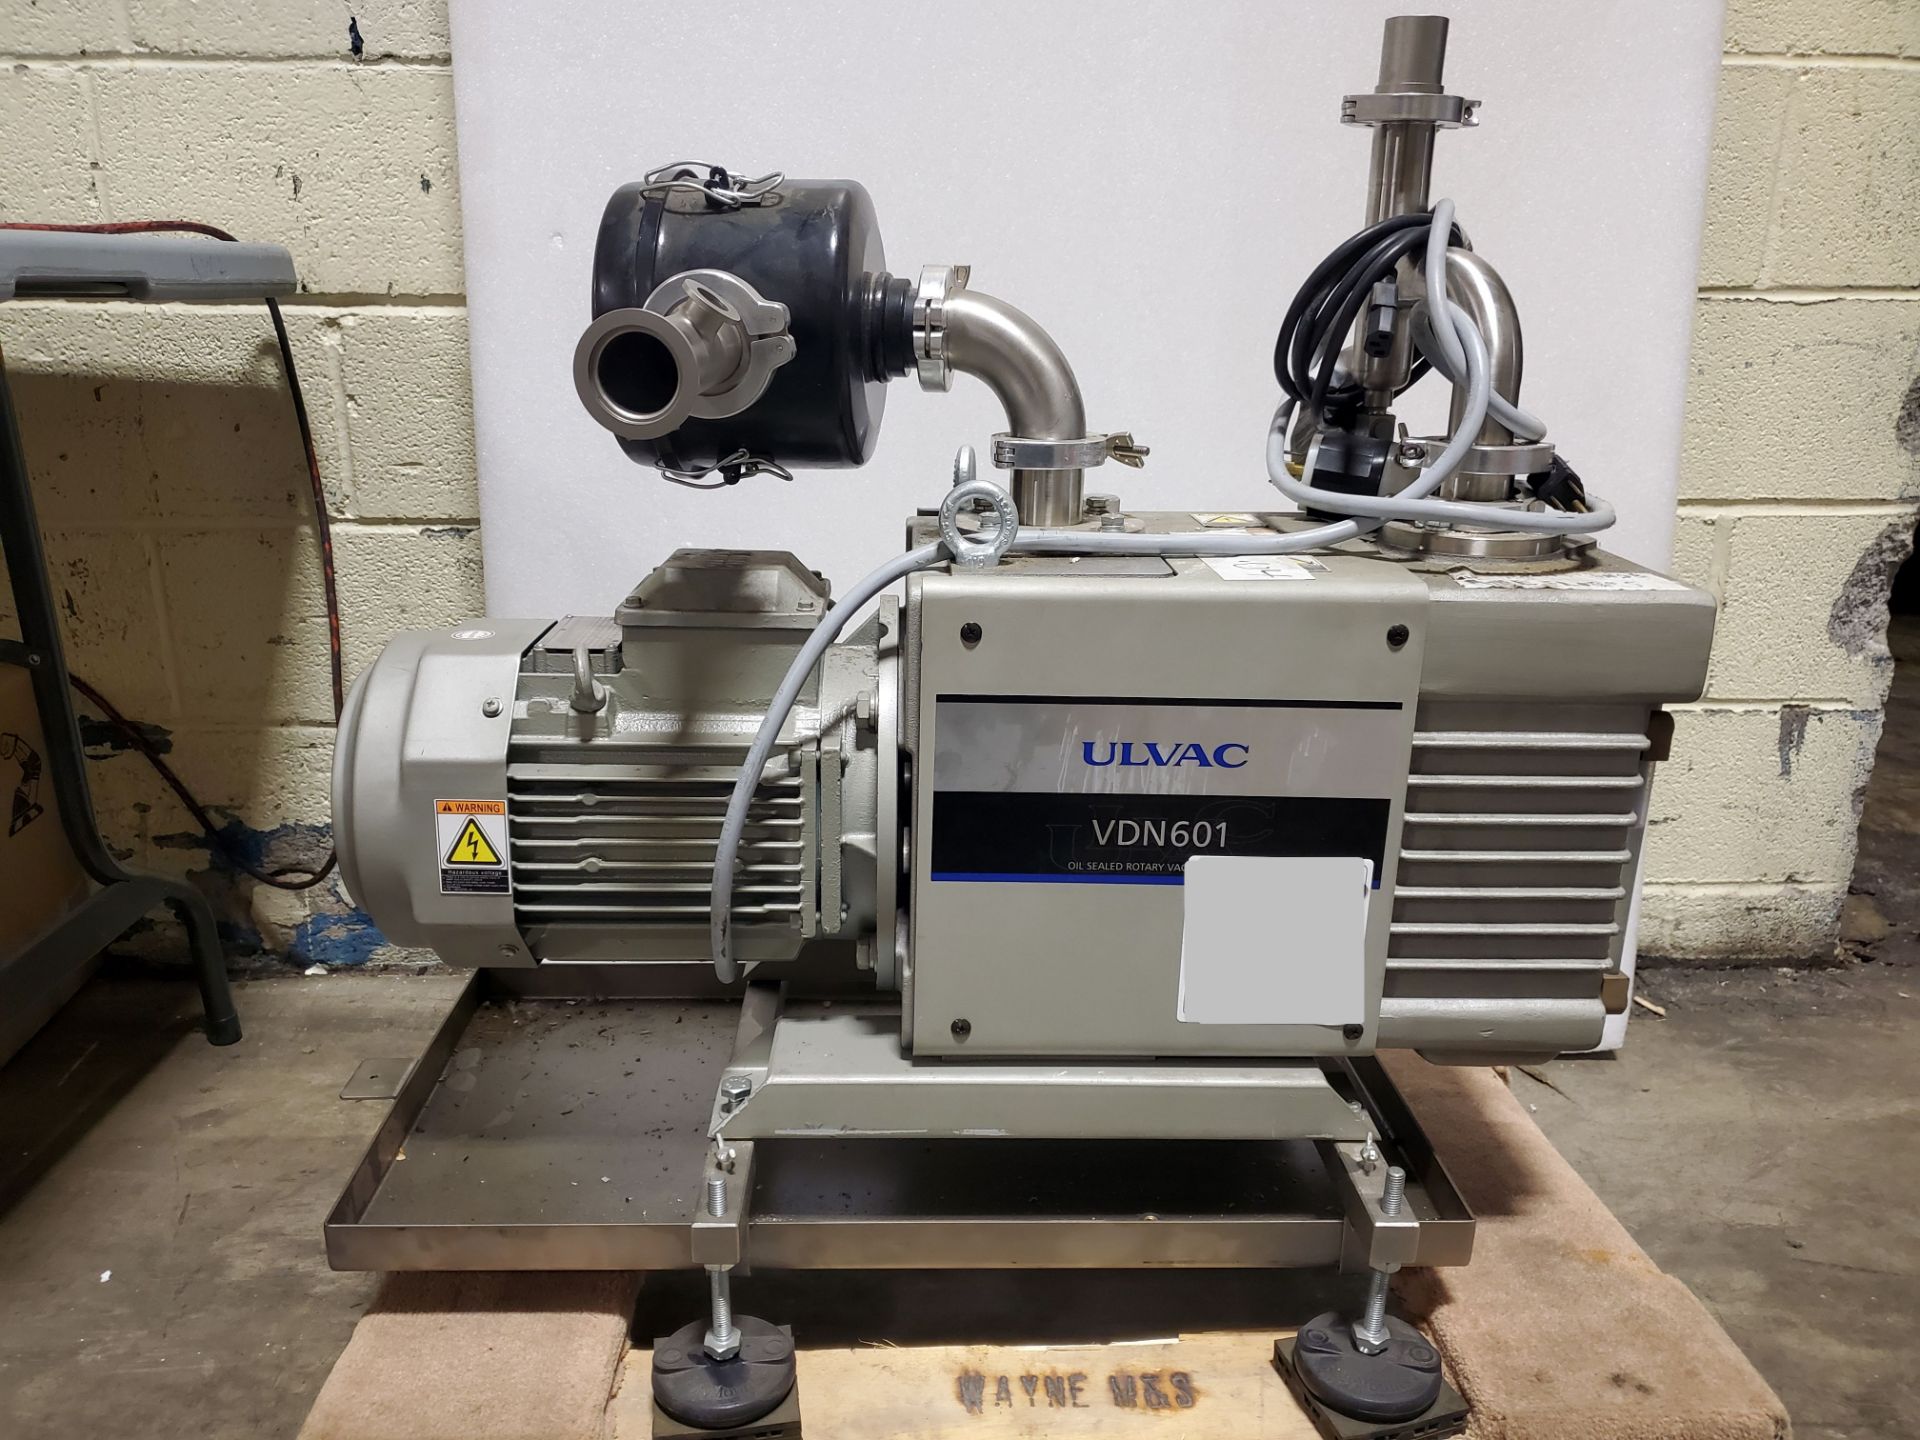 ULVAC Oil Sealed Rotary Vacuum Pump, Model VDN601